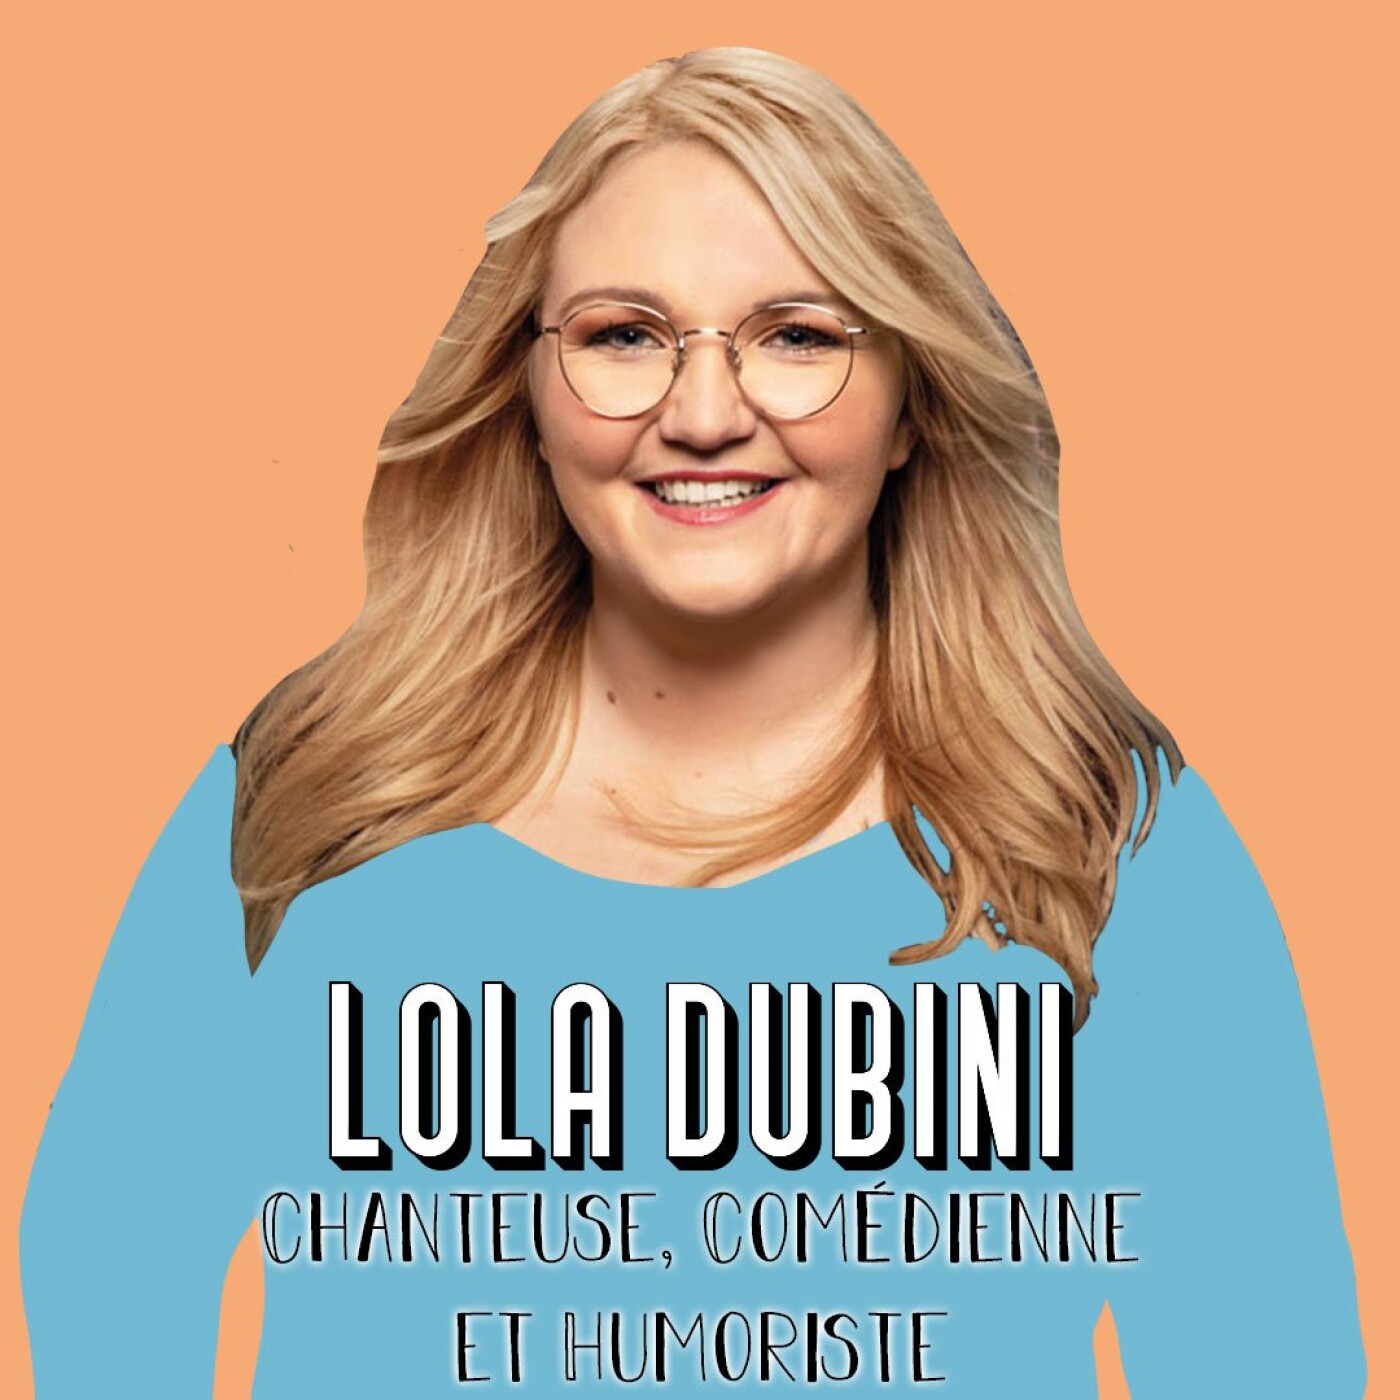 Lola Dubini, Chanteuse, Comédienne et Humoriste - Trouver son propre accord [BEST-OF]